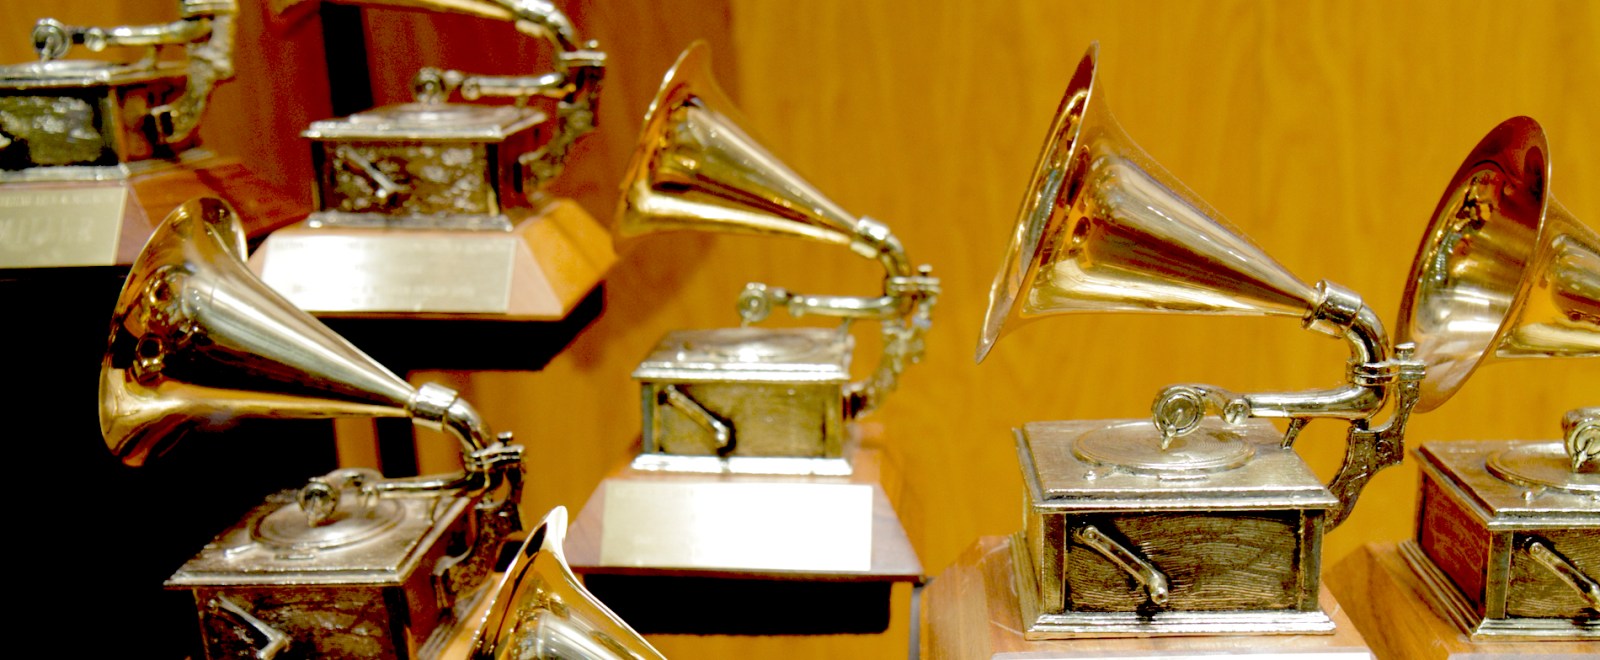 Grammy Award Grammys Trophy Statue